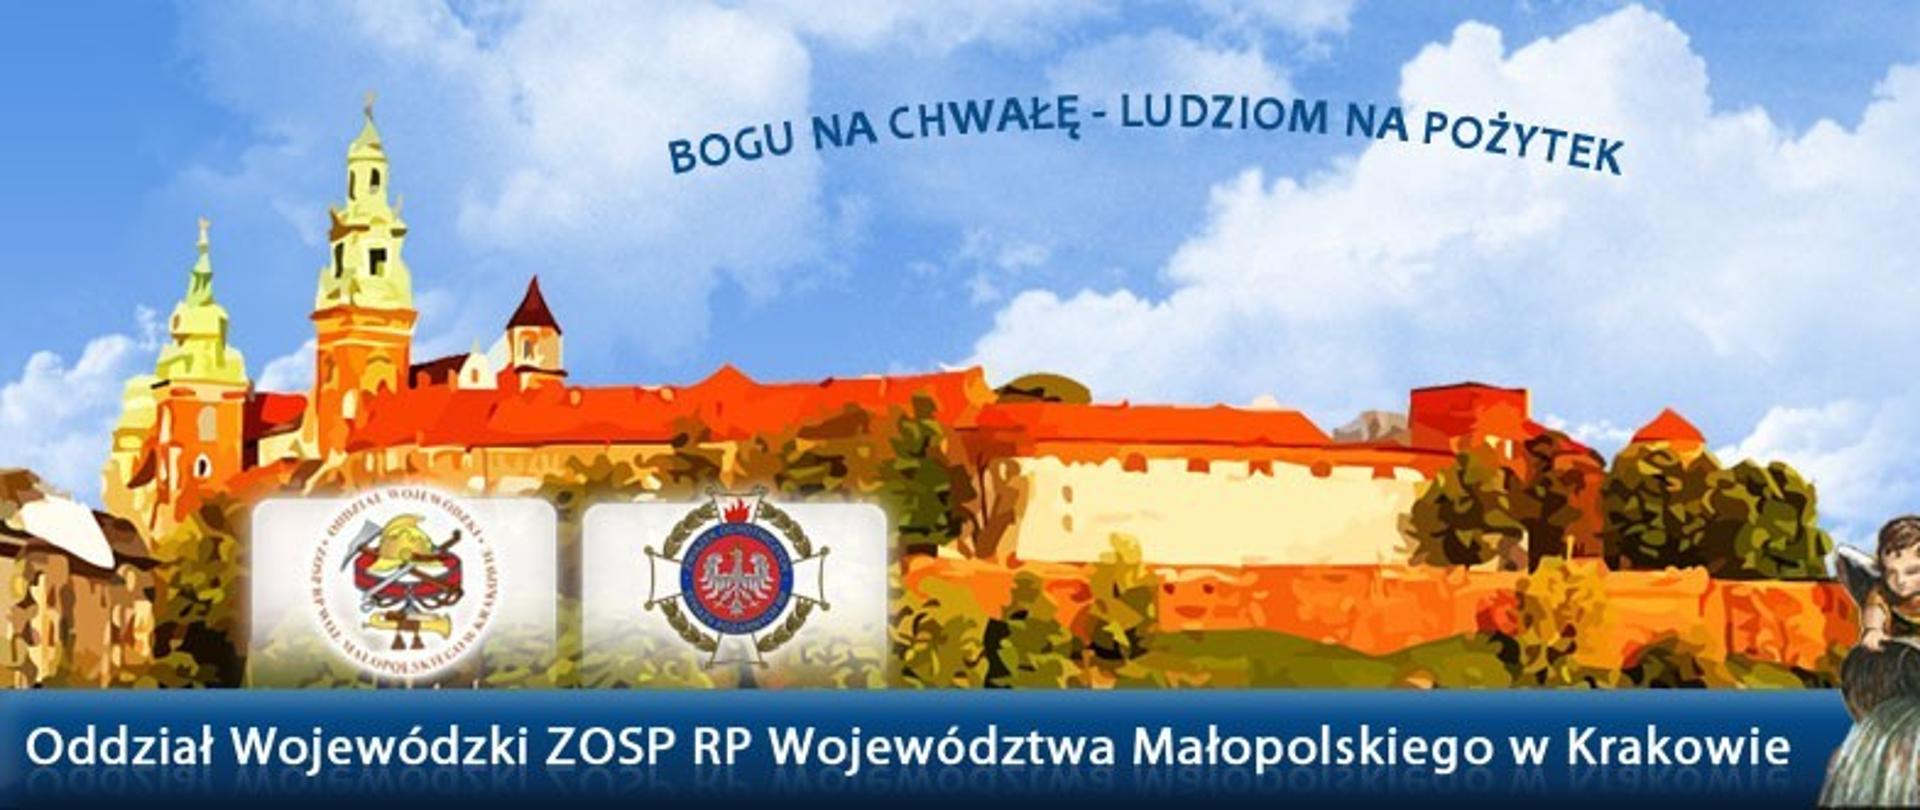 W tle Wawel, na pierwszym planie napis Oddział Wojewódzki ZOSP RP Województwa Małopolskiego.